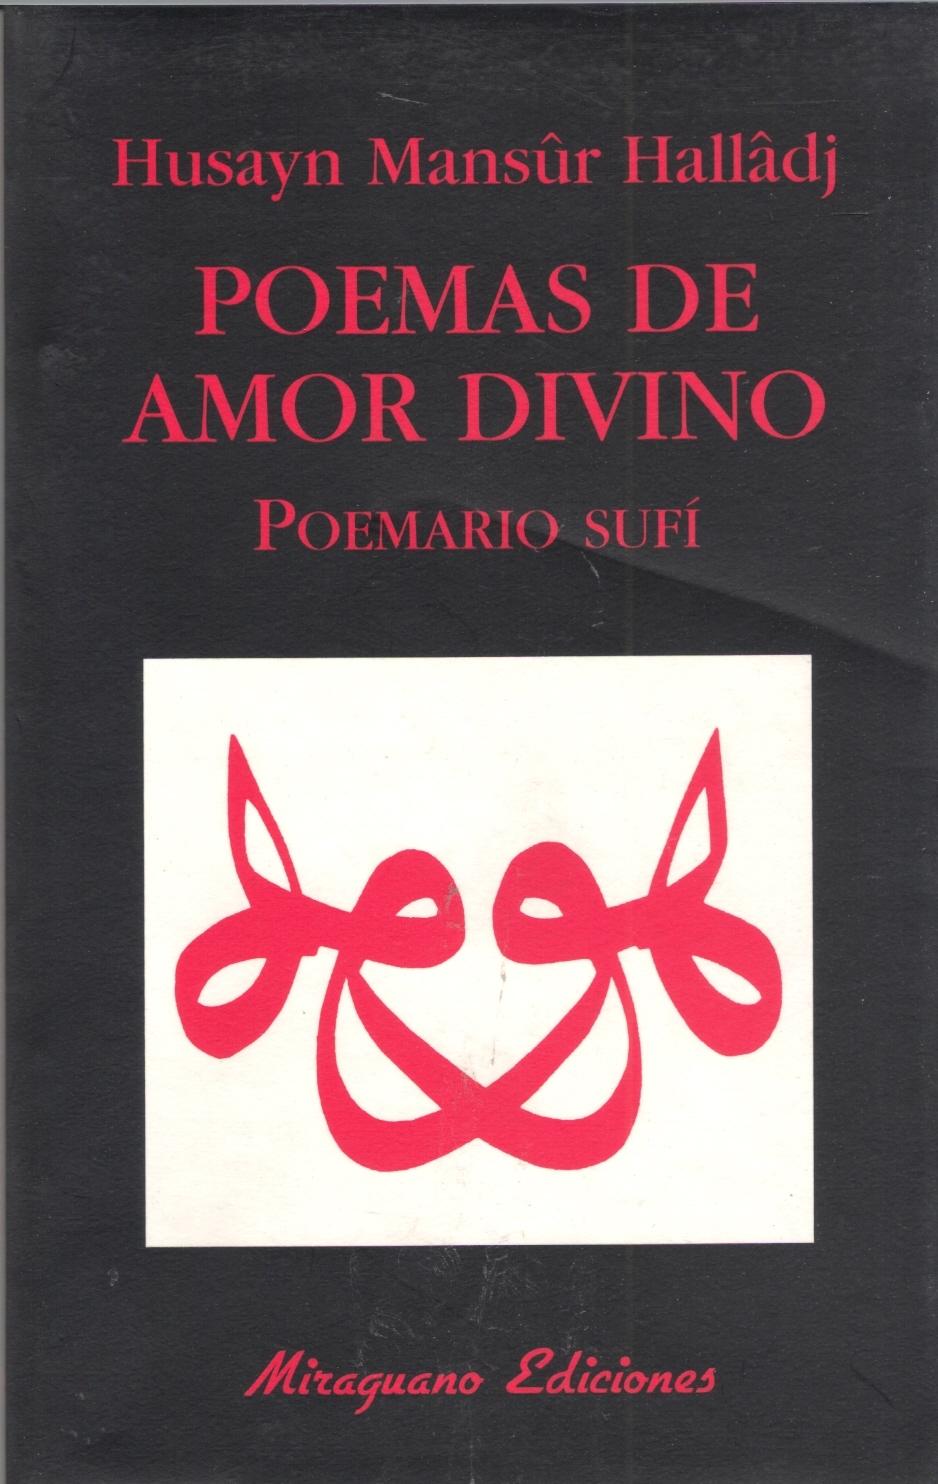 Poemas de Amor Divino "Poemario Sufi"